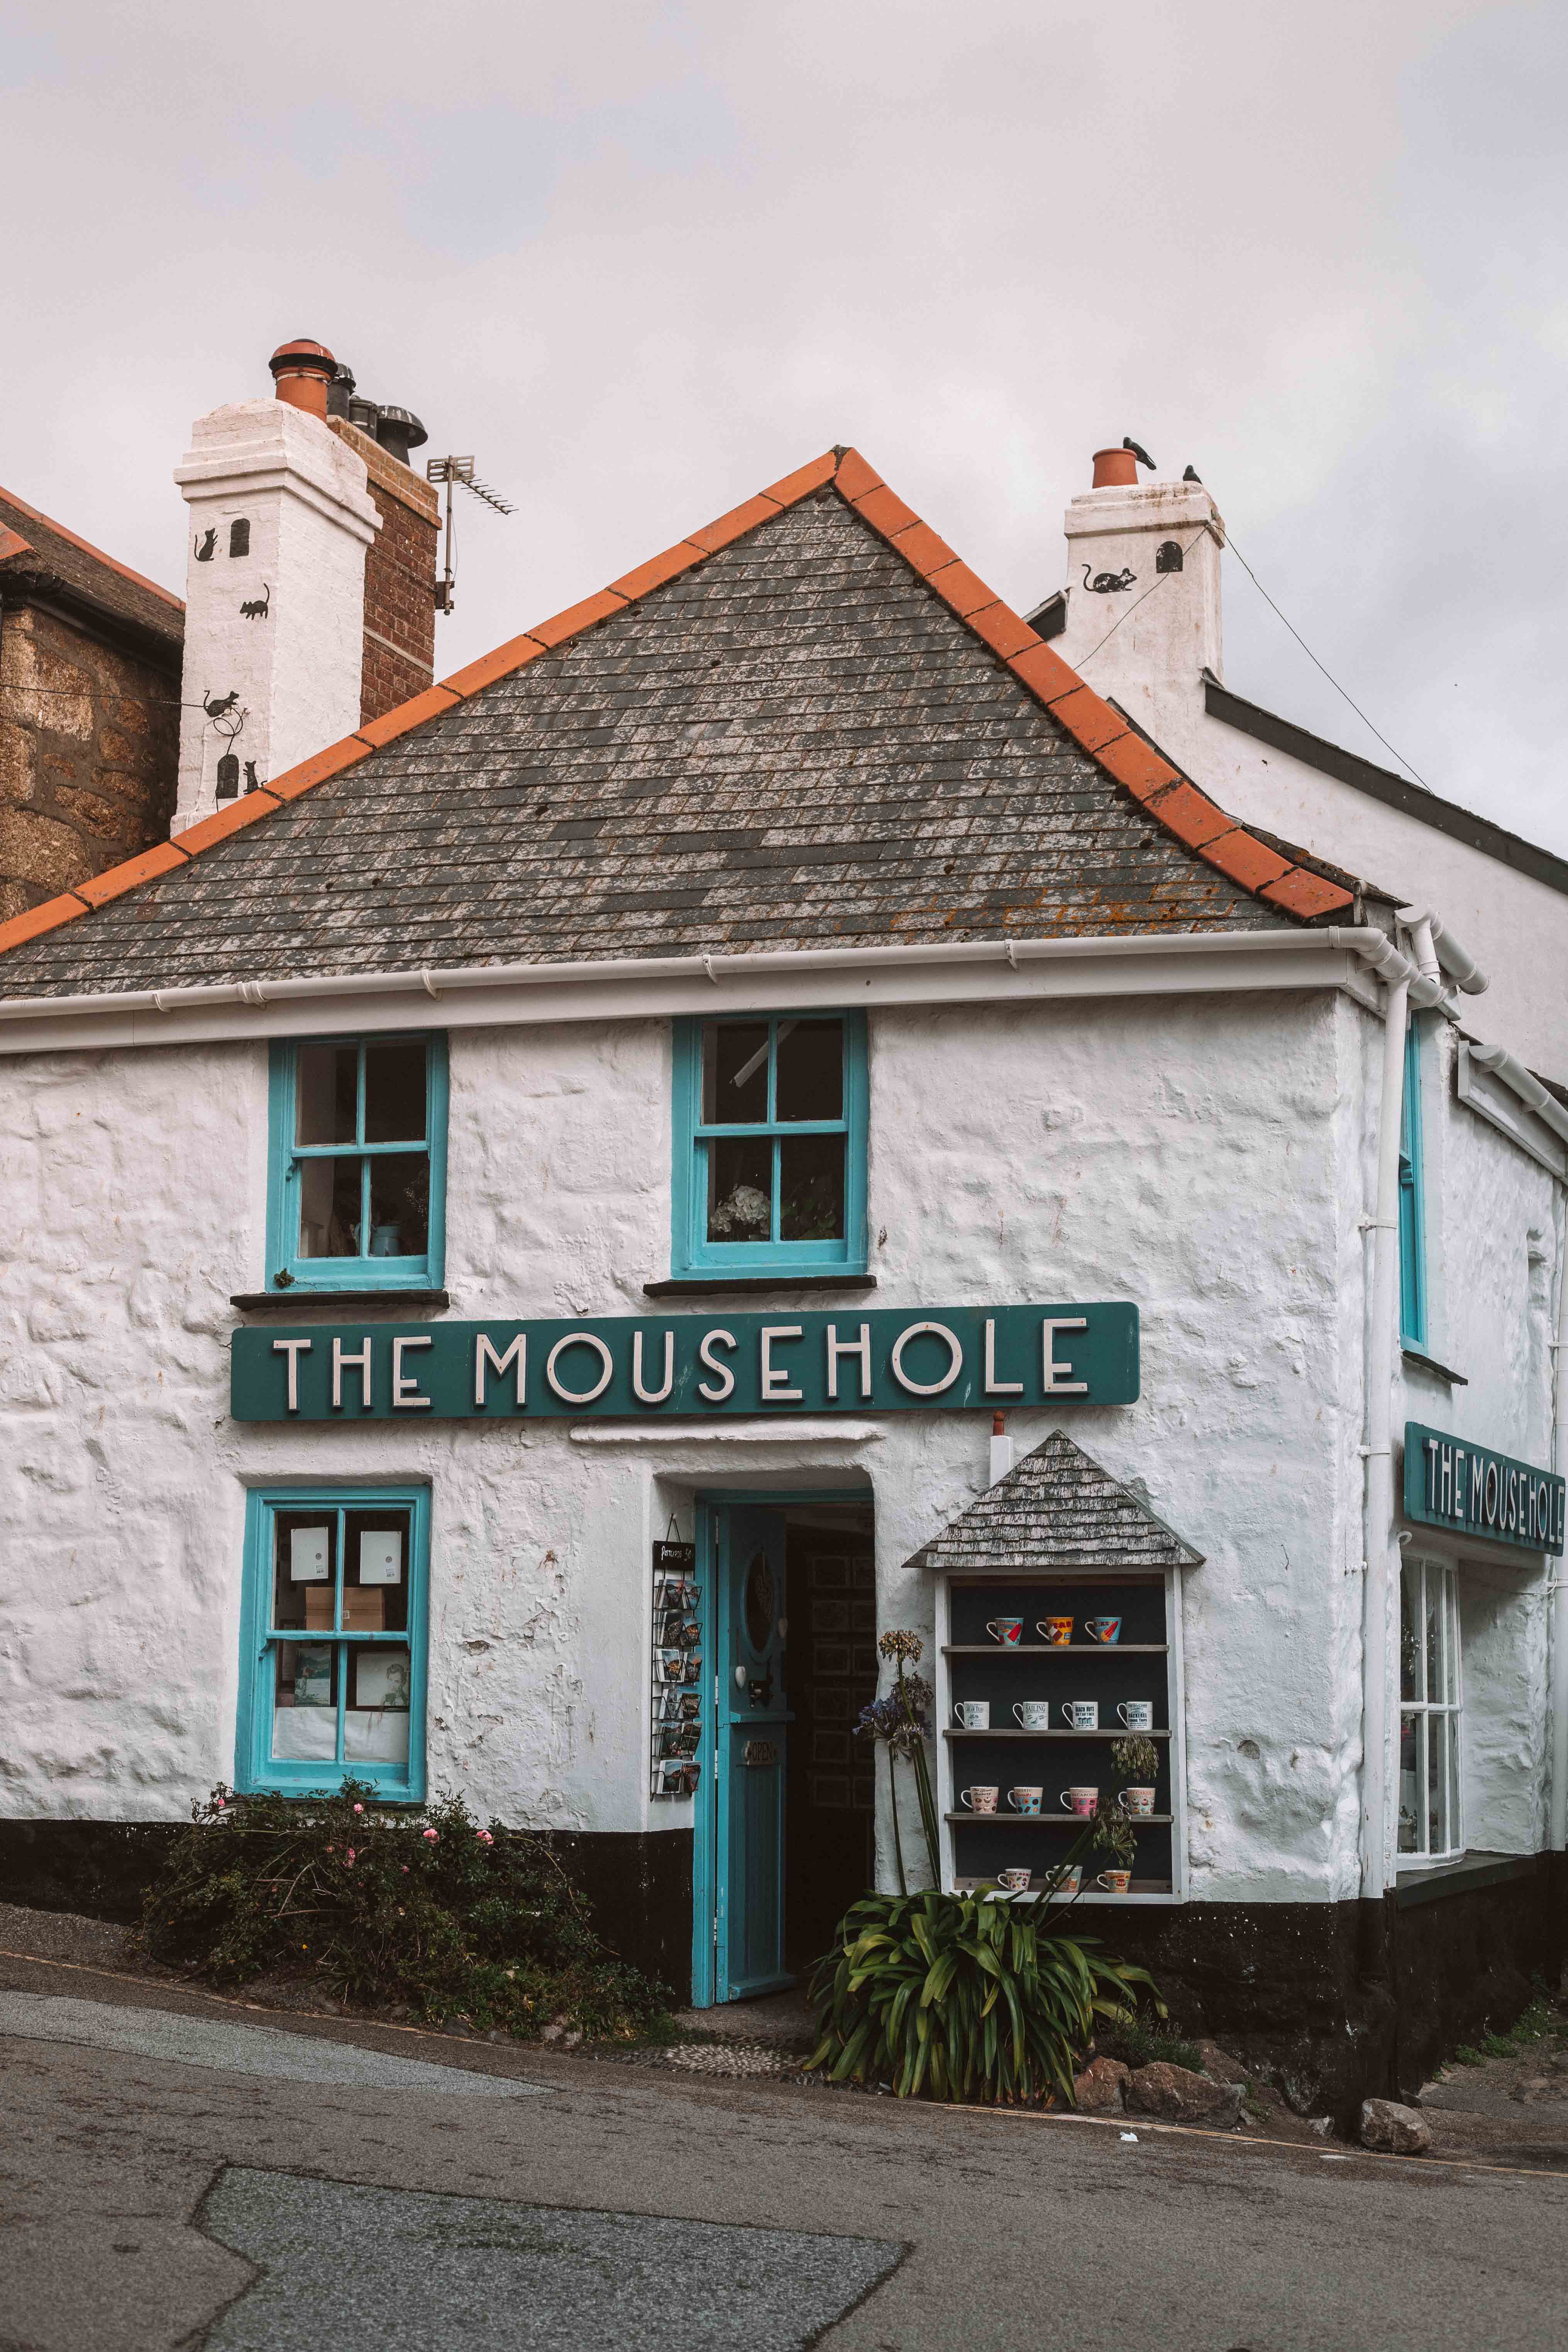 The Mousehole pub, Mousehole, cornwall